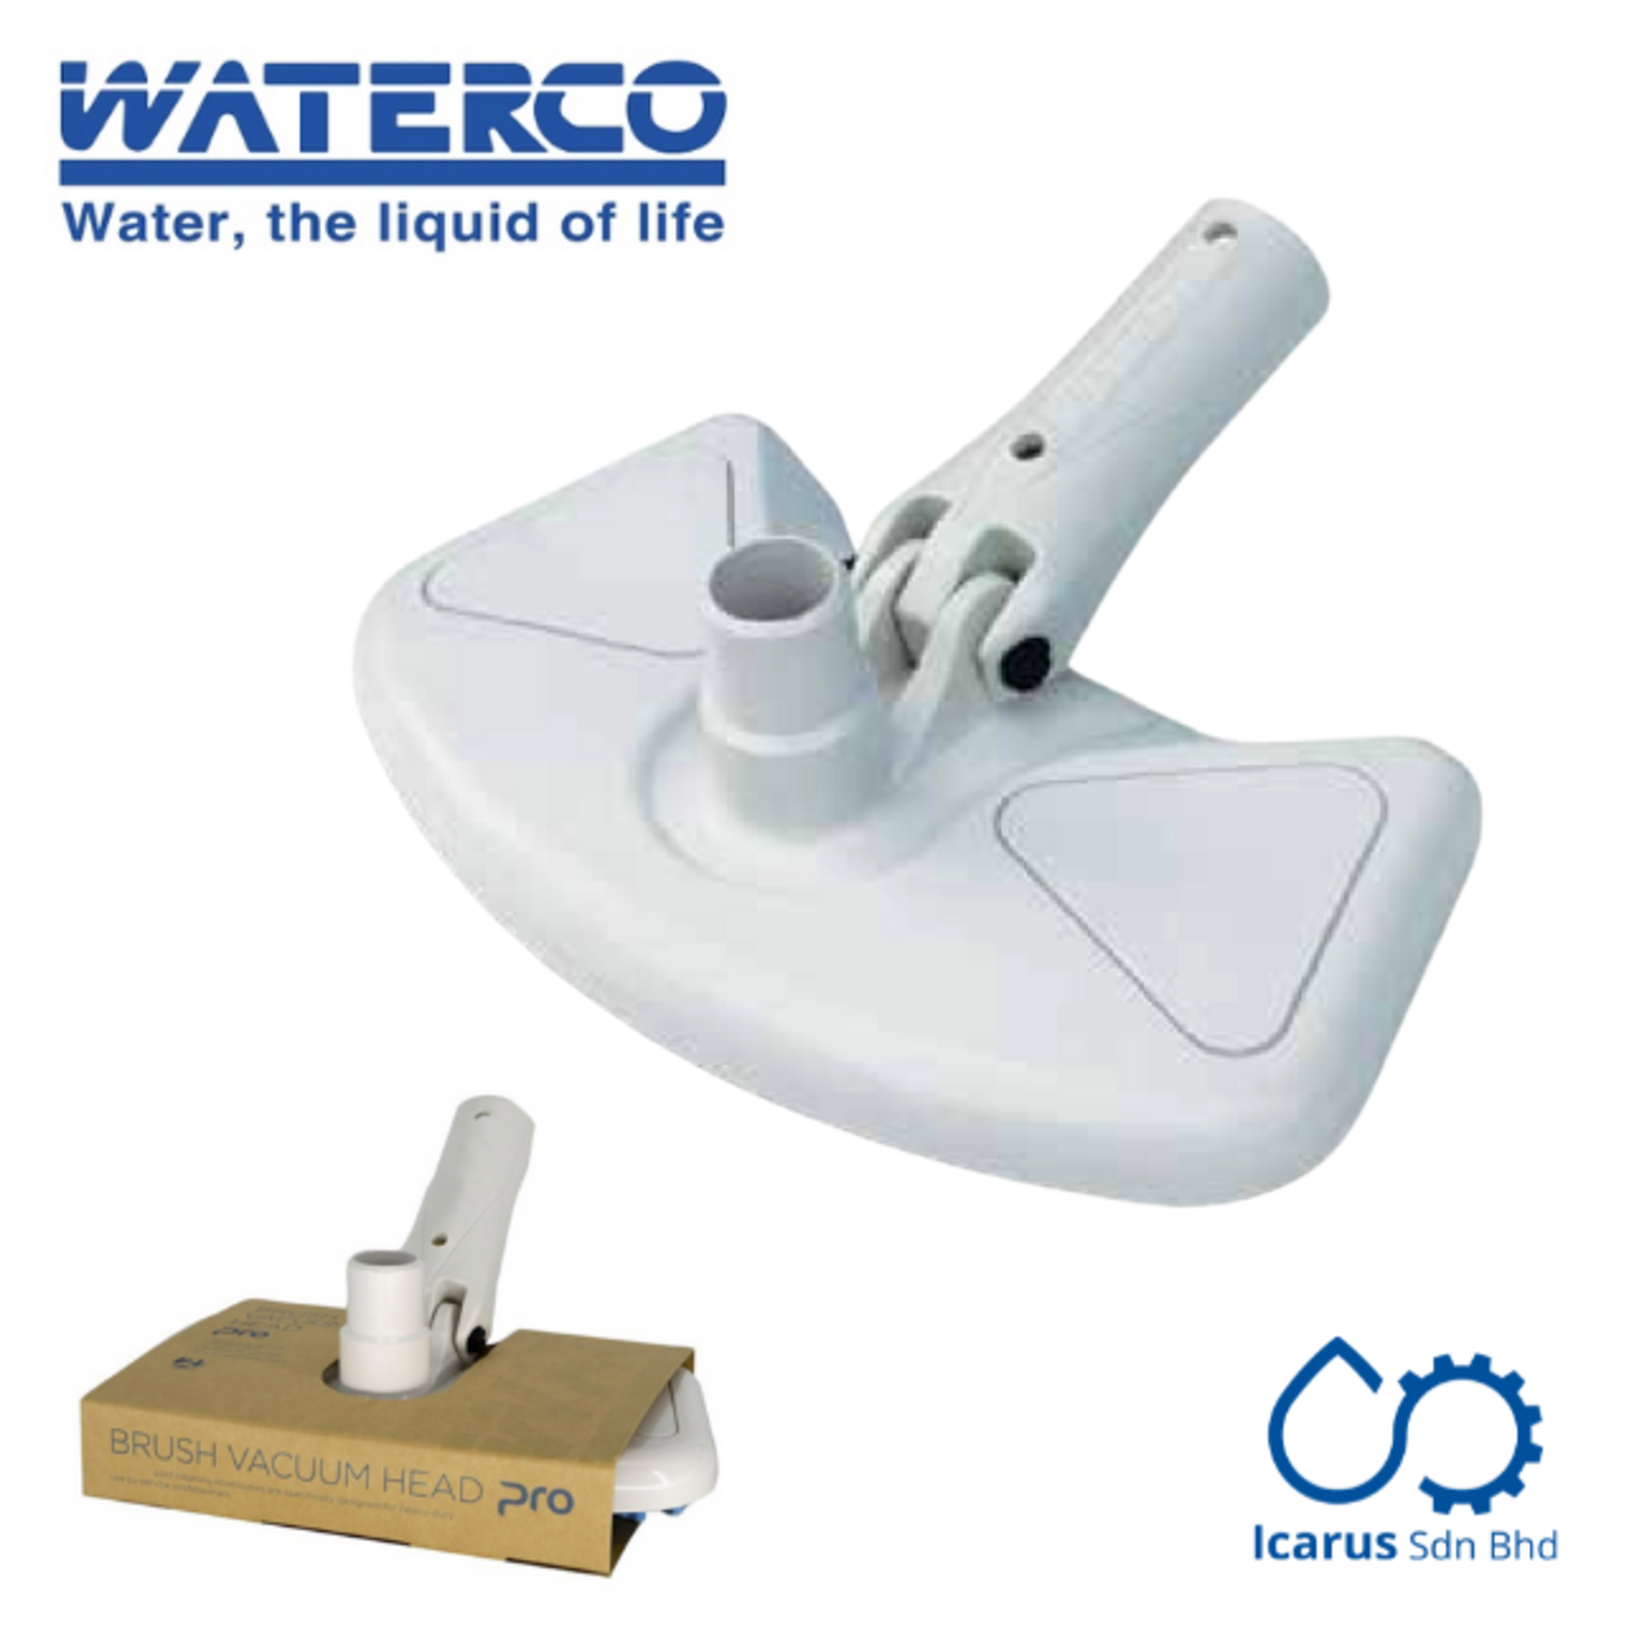 Waterco Brush Vacuum Head PRO, 12 inch